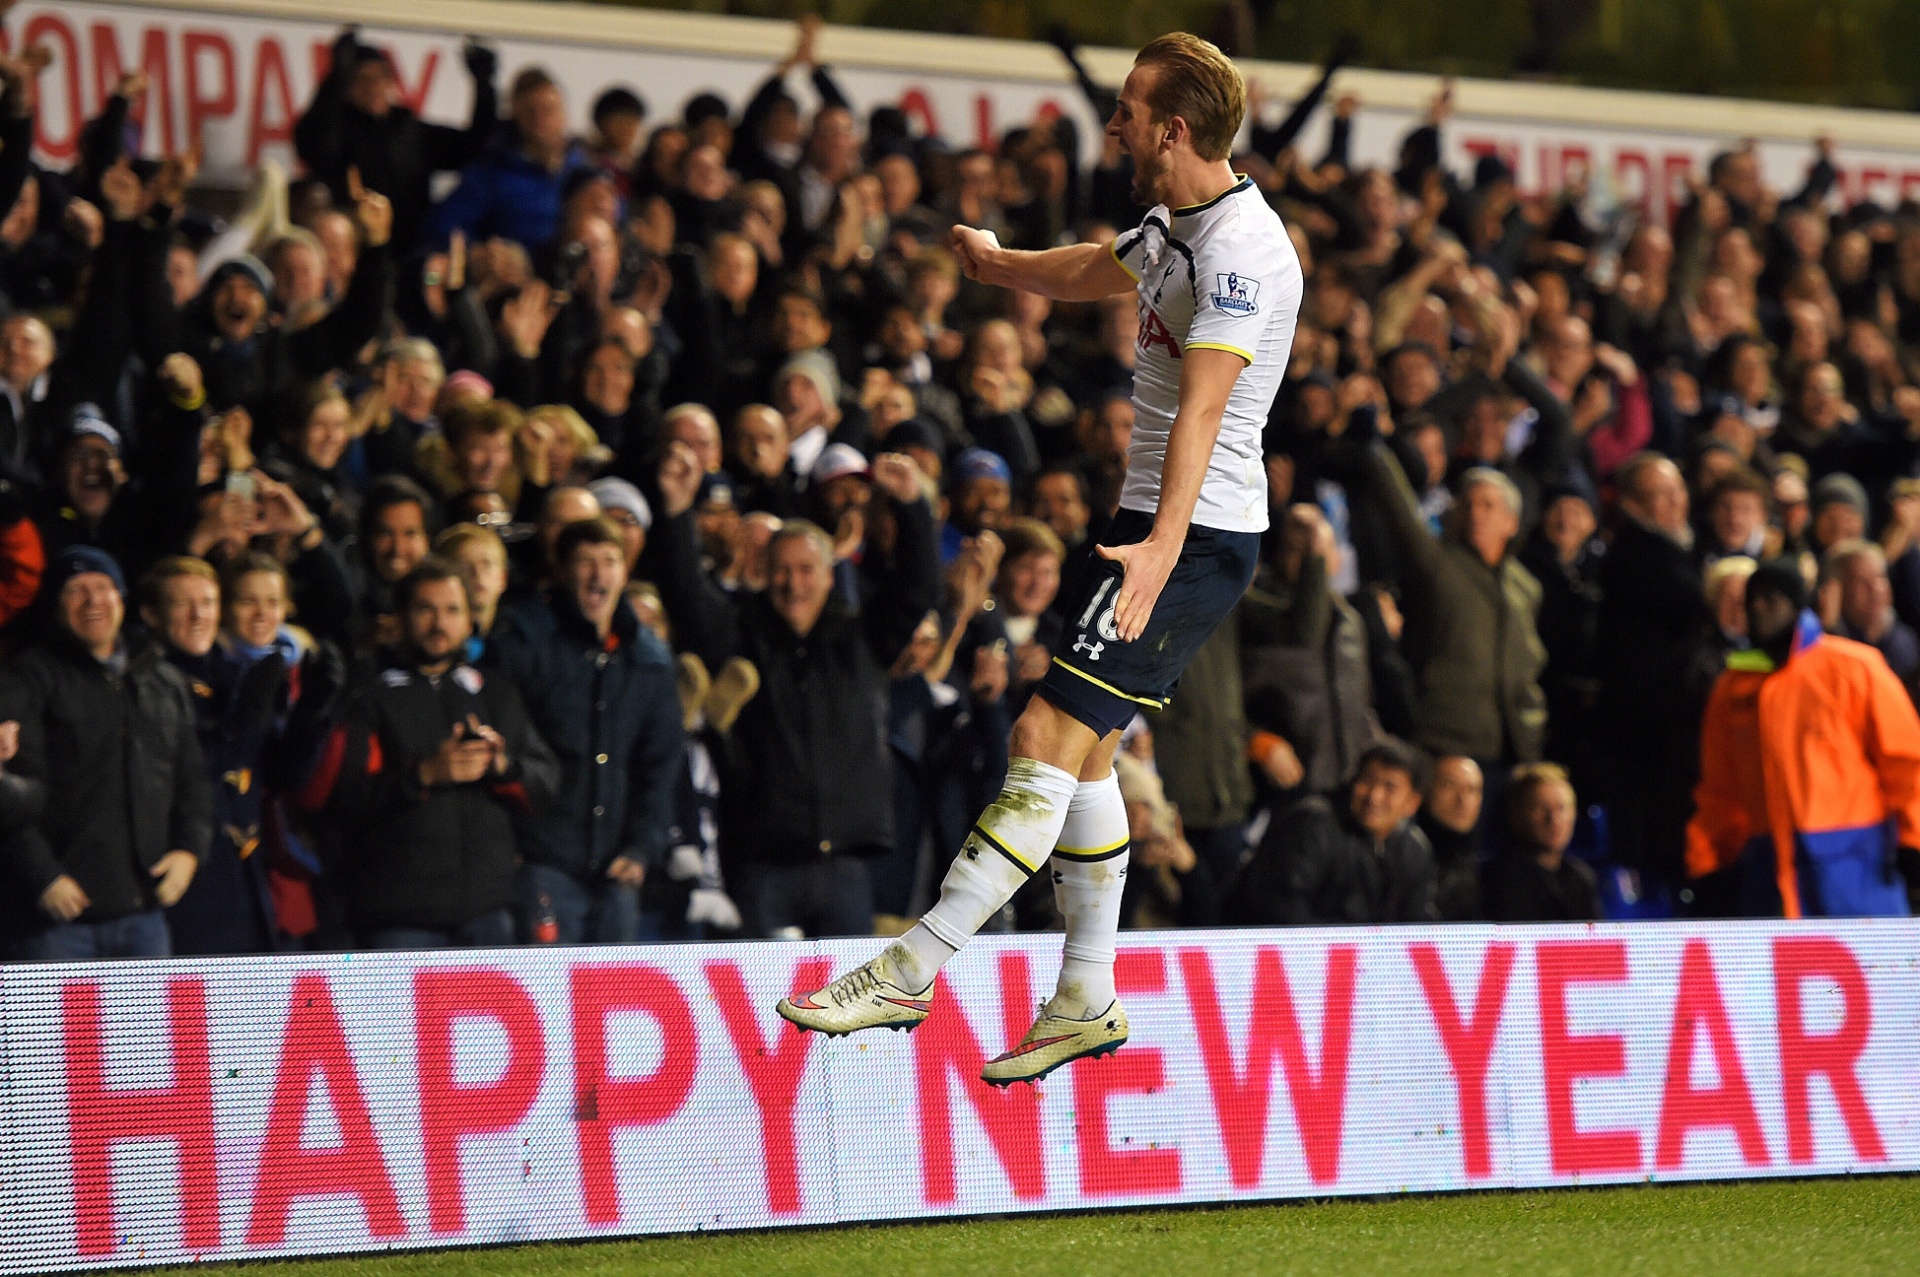 01.jan - "Feliz ano novo", diz a placa abaixo do jogador Harry Kane, do Tottenham, que vibra após fazer um gol. O recado cai bem para fechar este álbum de fotos